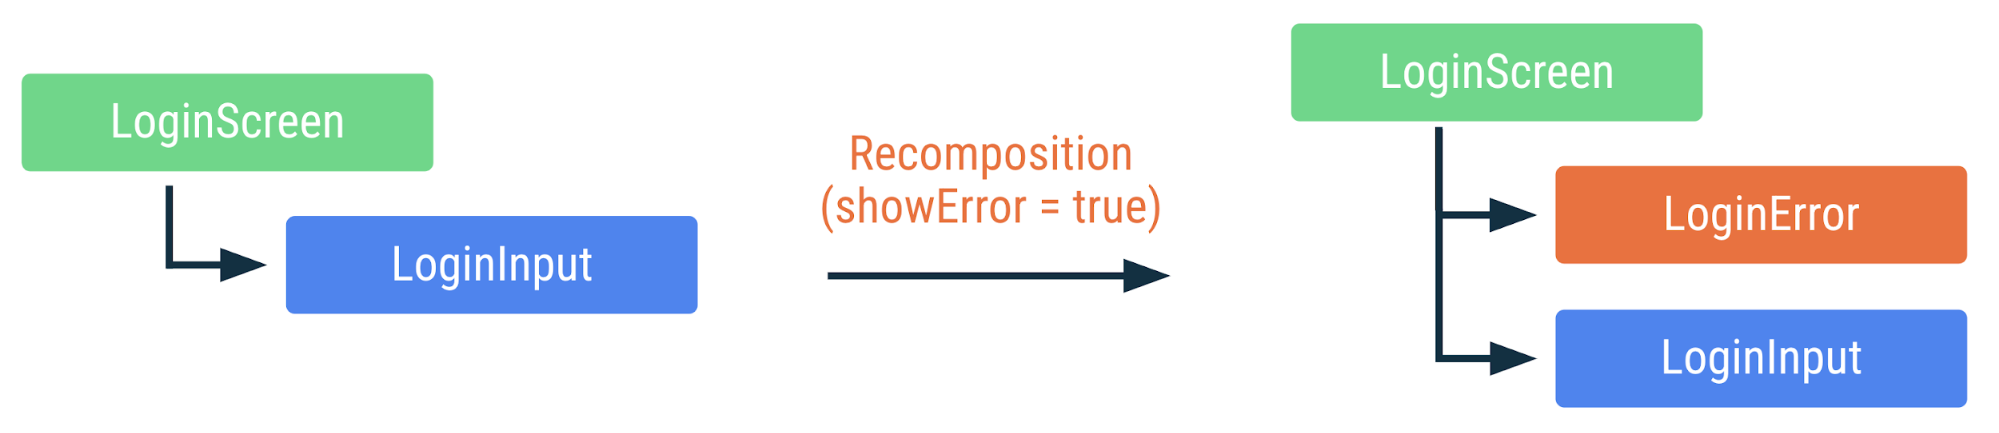 showError フラグが true に変更された場合に上記のコードがどのように再コンポーズされるかを示す図。LoginError コンポーザブルは追加されますが、その他のコンポーザブルは再コンポーズされません。